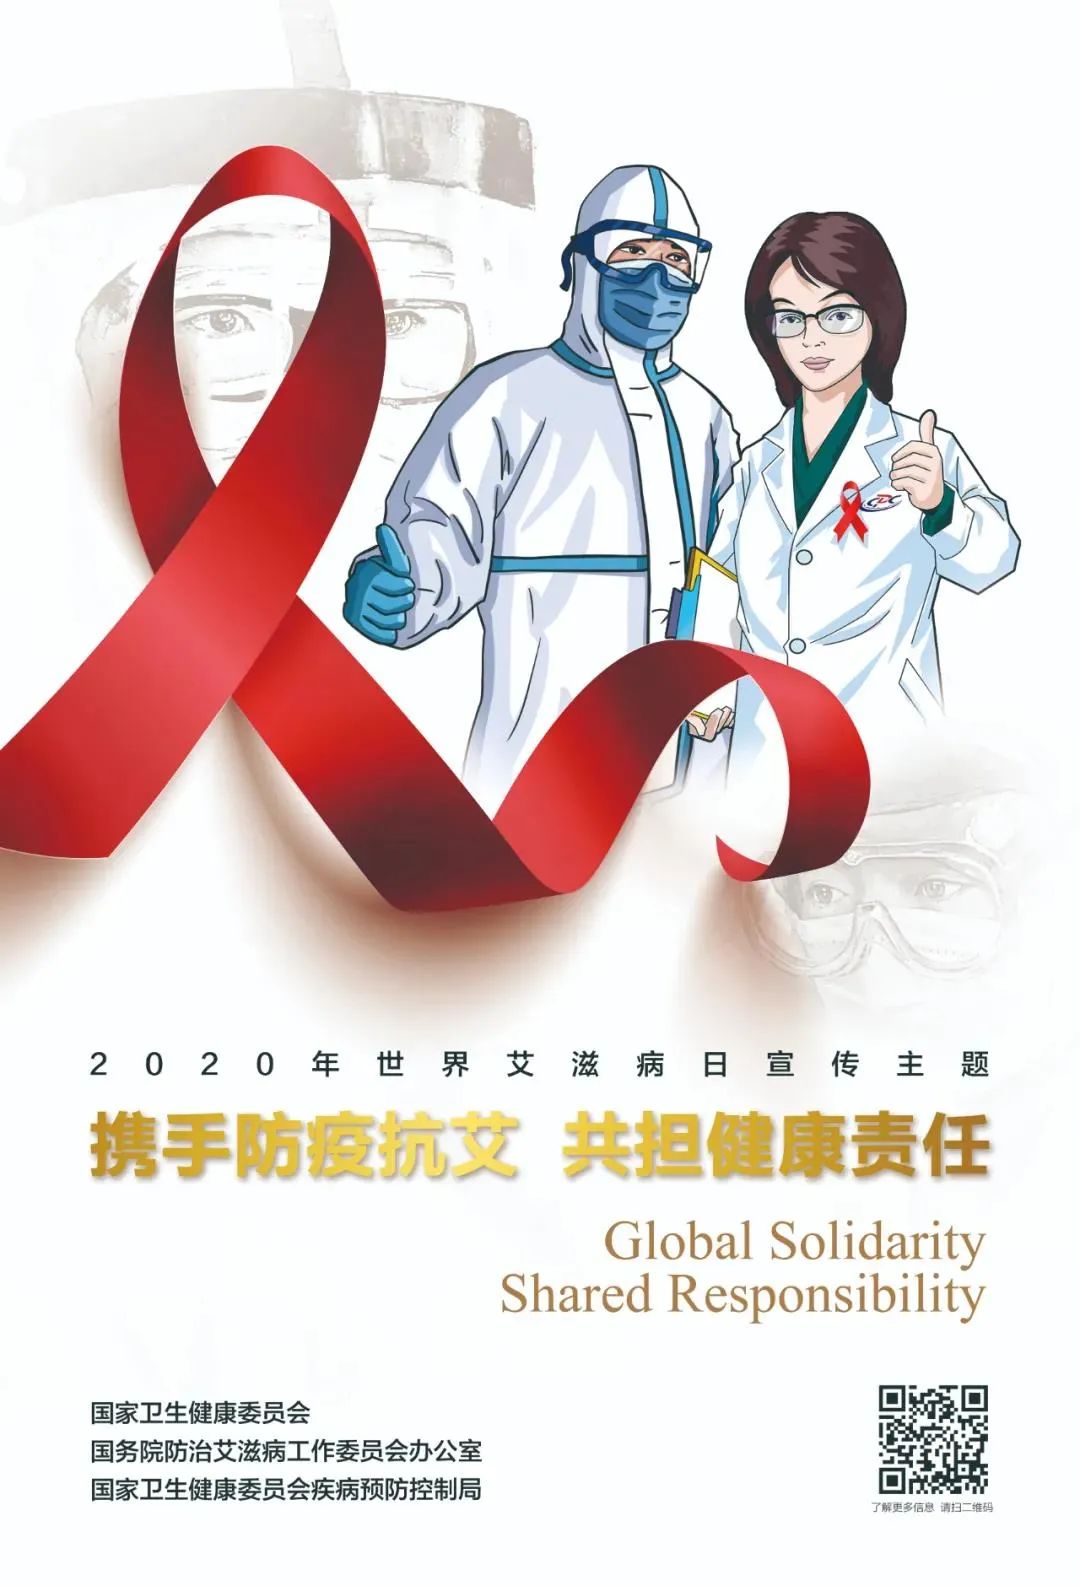 红十字志愿服务队举办“红丝带传情 防艾同行” 预防艾滋病宣传海报设计大赛